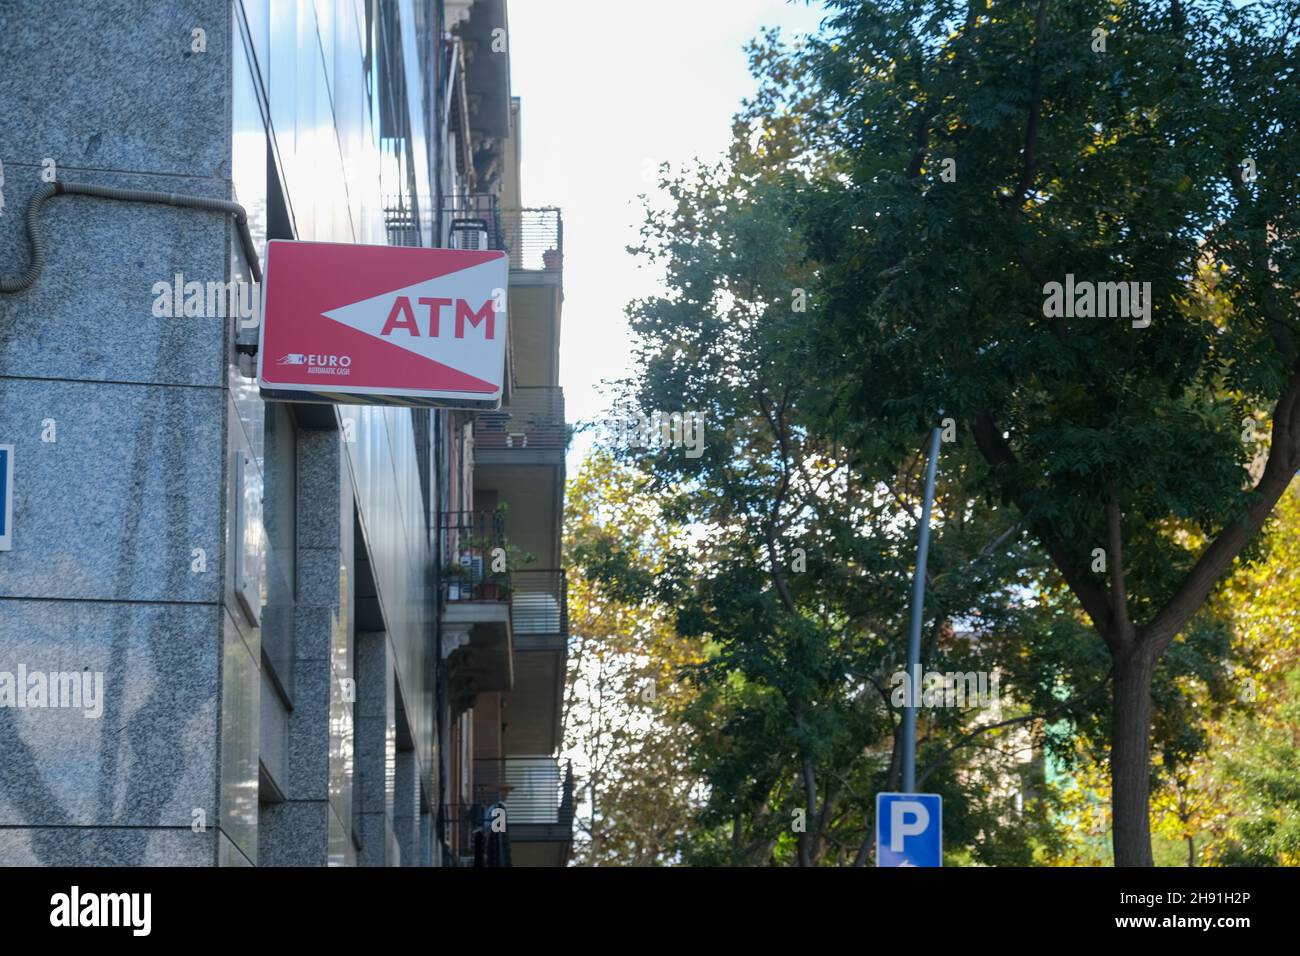 Barcelone, Espagne - 5 novembre 2021 : panneau de signalisation ATM, Editorial. Banque D'Images